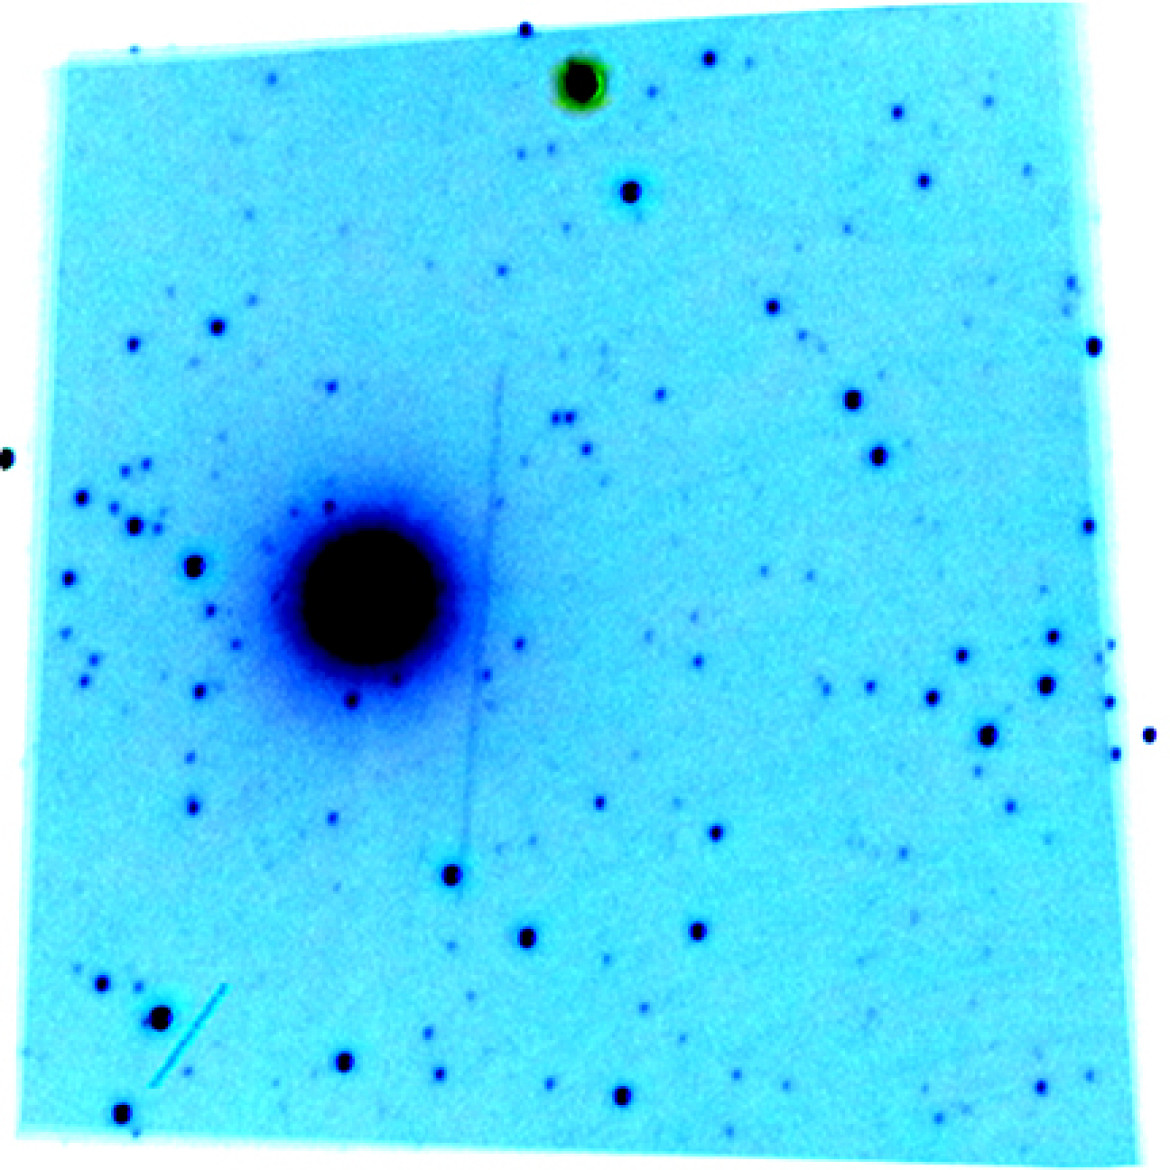 Derek Robson - III miejsce w kategorii "Planets, Comets and Asteroids", zdjęcie przedstawia asteroidę 164121 (2003 YT1), która w 2016 roku przeleciała blisko orbity Ziemi